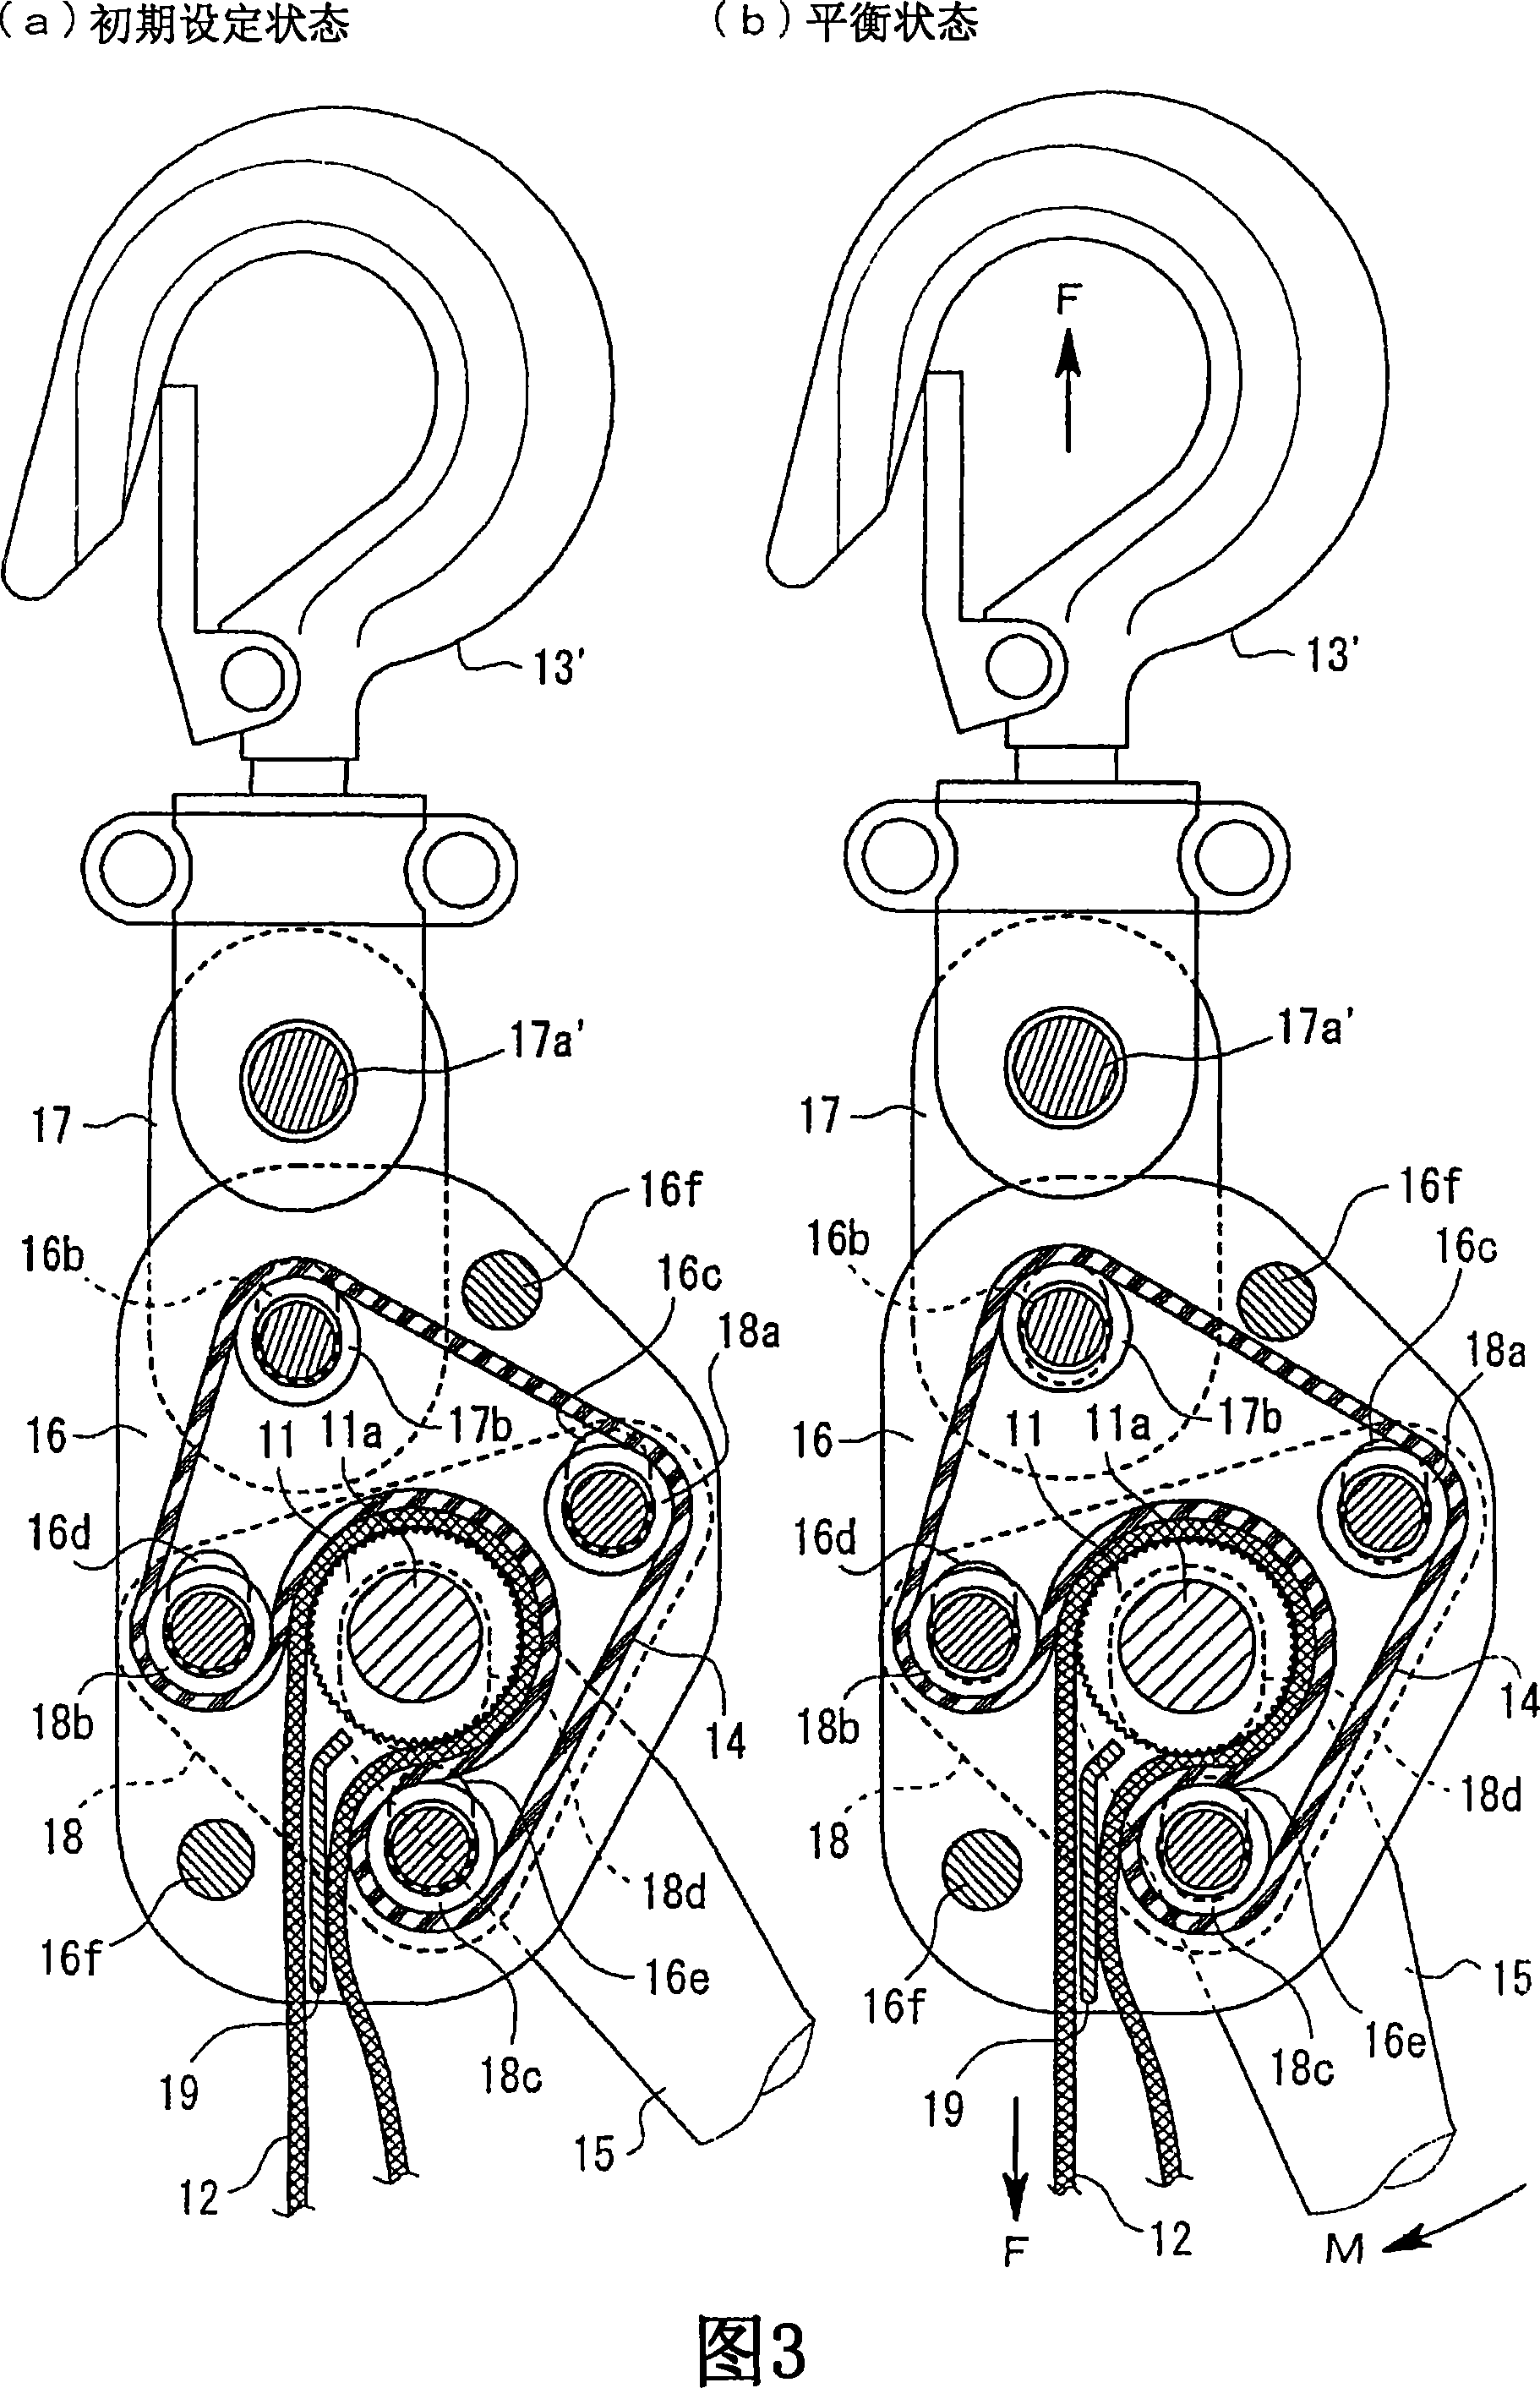 Belt adjustment mechanism, and belt hoist and load binder with the belt adjustment mechanism